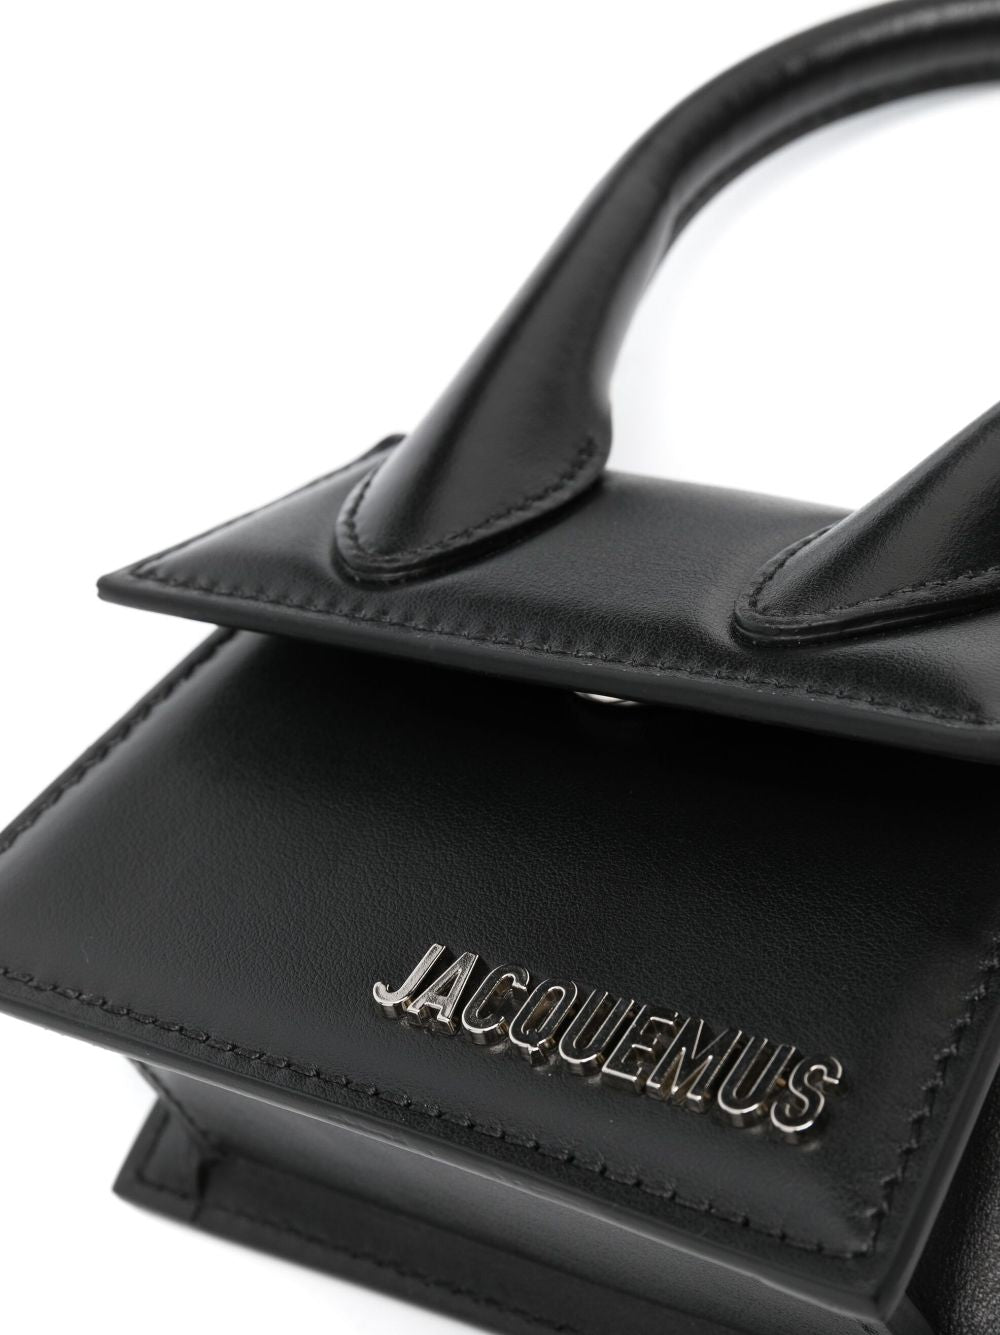 Jacquemus Bags.. Black